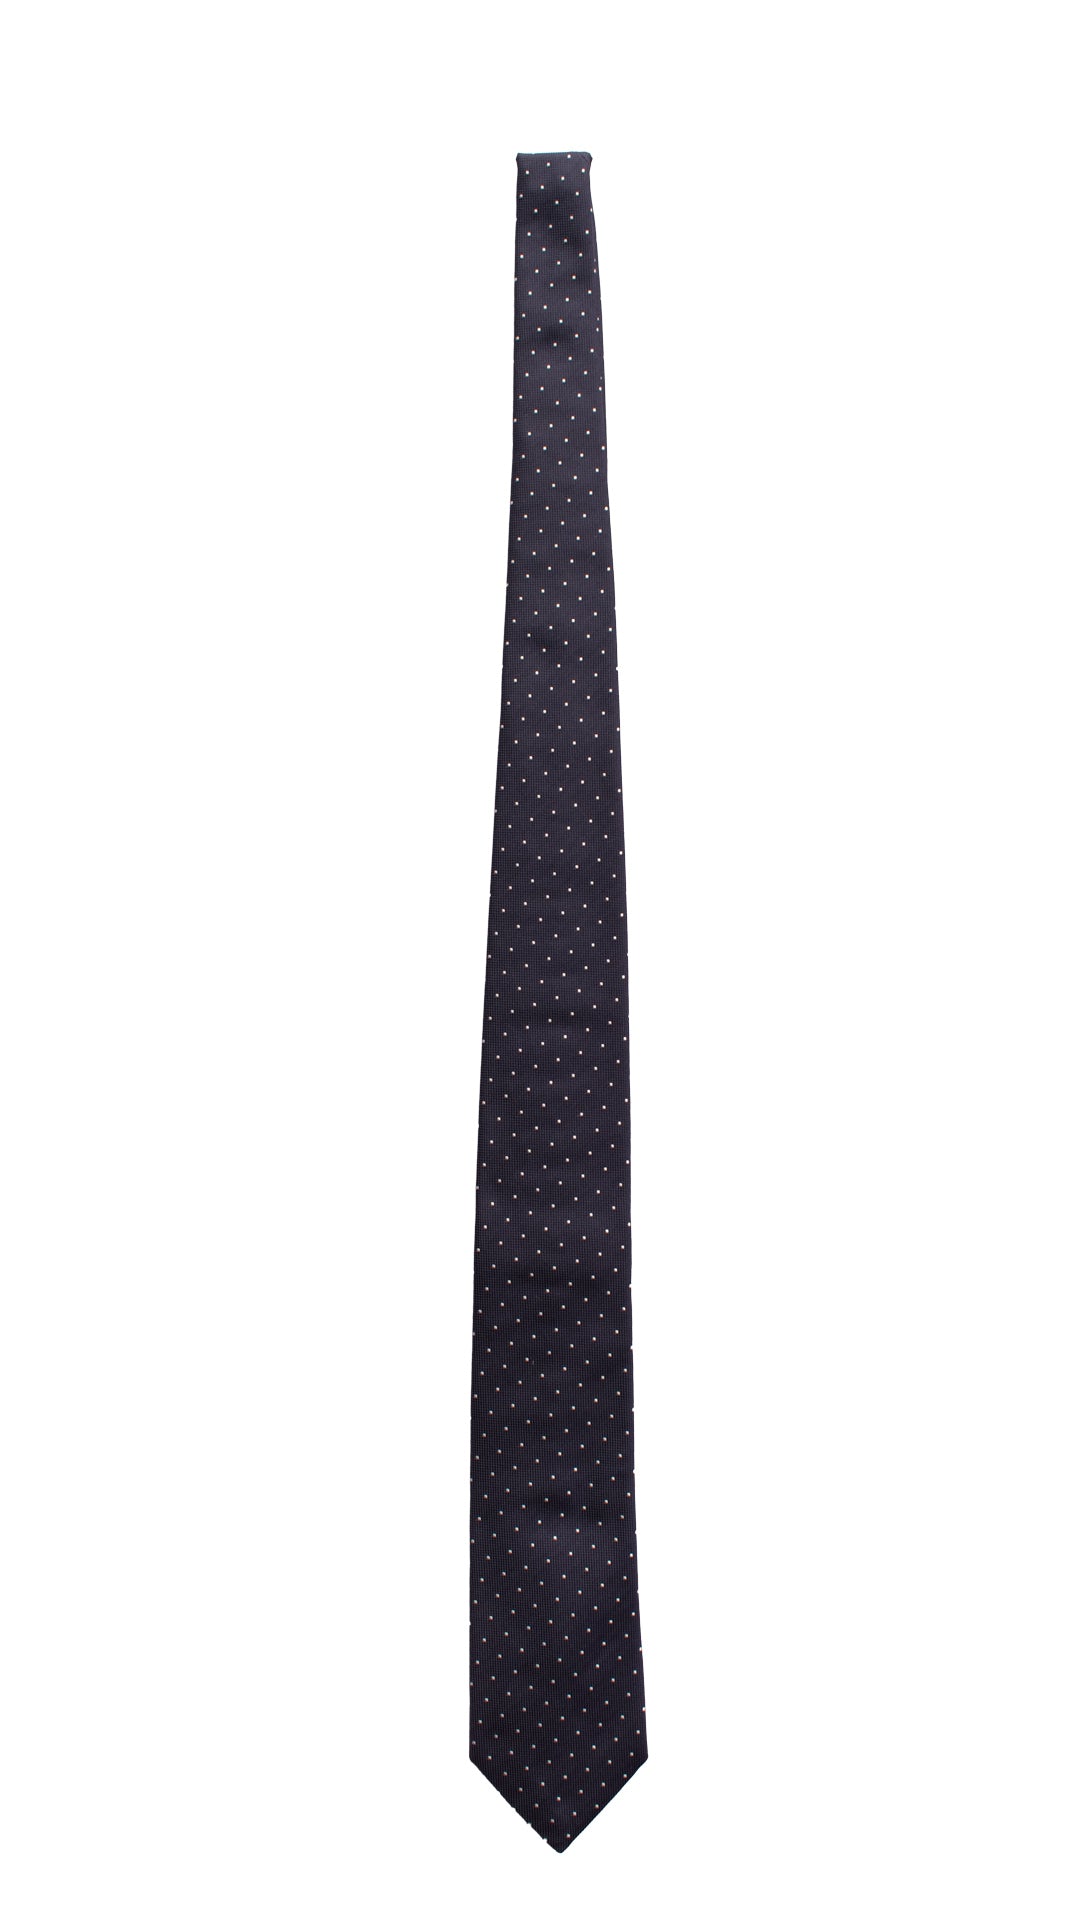 Cravatta da Cerimonia di Seta Blu a Pois Bianchi CY6638 Intera